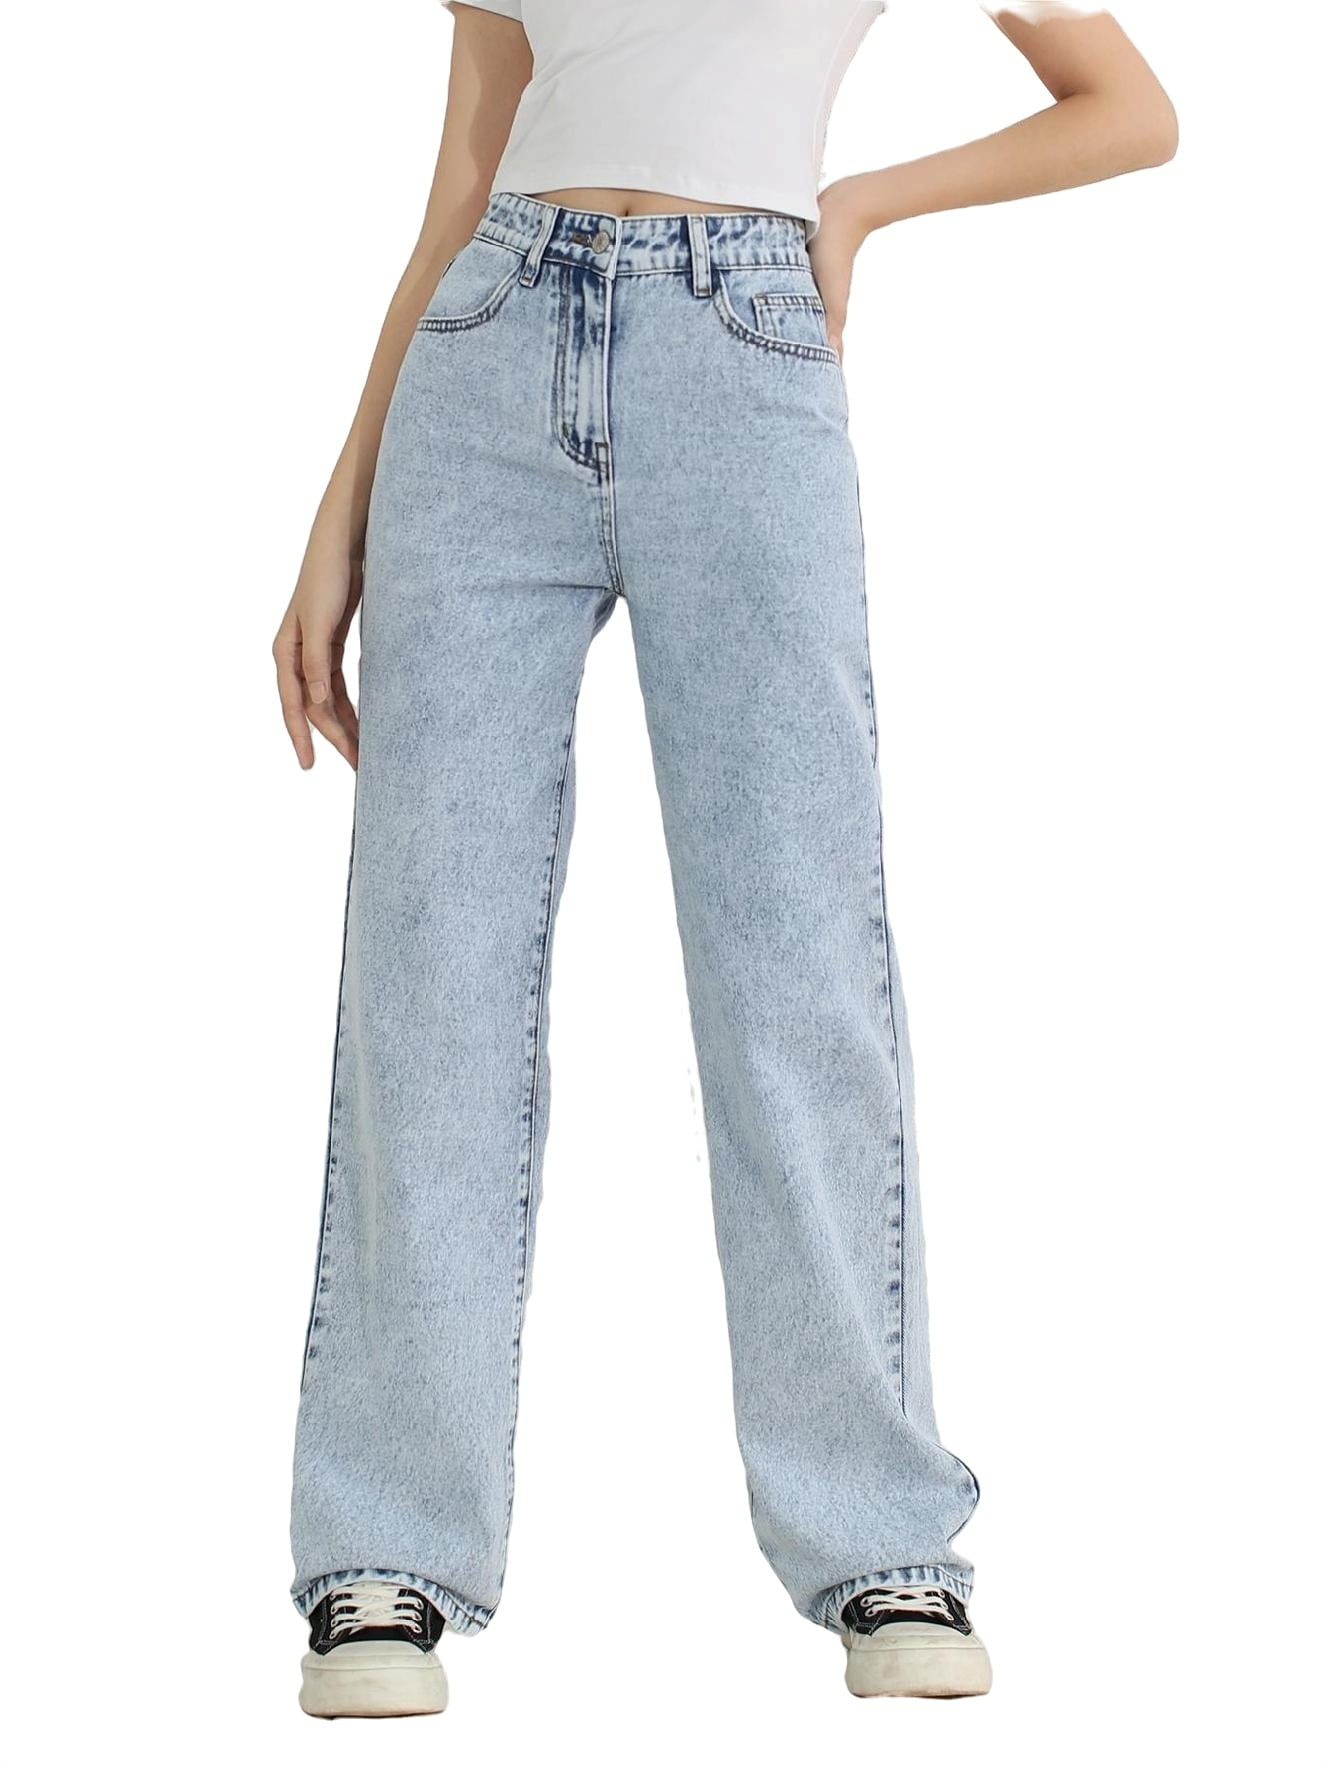 Plain Straight Leg Light Wash Girls Jeans (Girl's) - Walmart.com